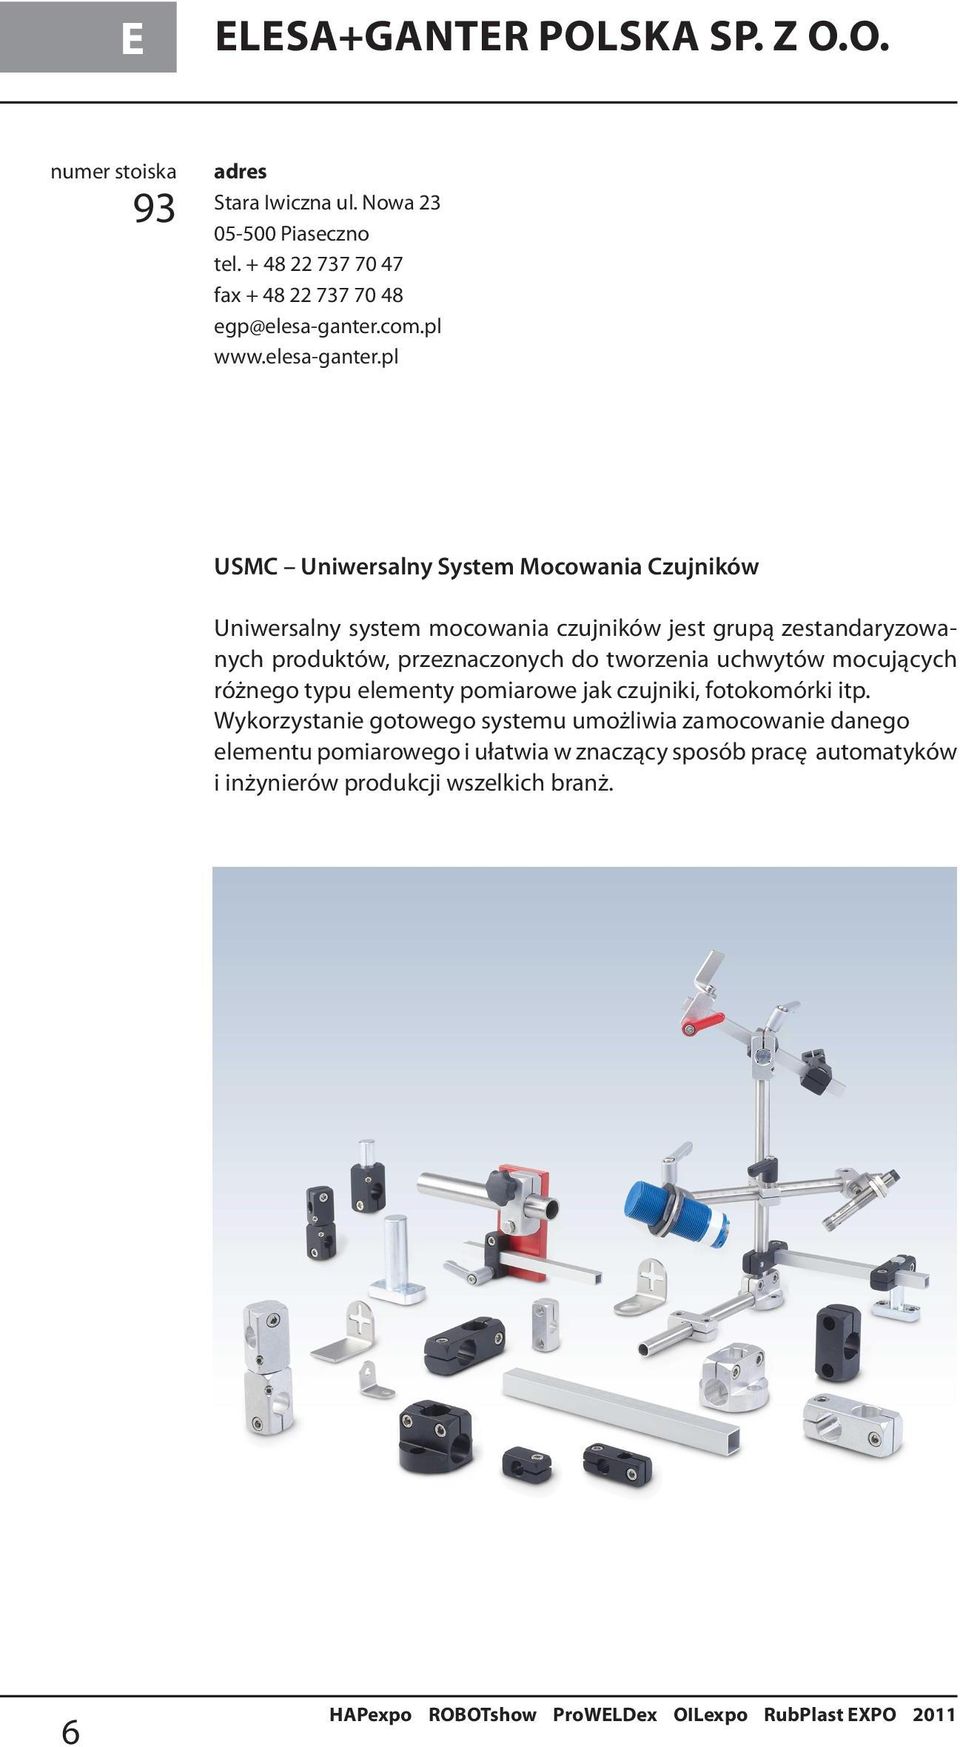 pl USMC Uniwersalny System Mocowania Czujników Uniwersalny system mocowania czujników jest grupą zestandaryzowanych produktów, przeznaczonych